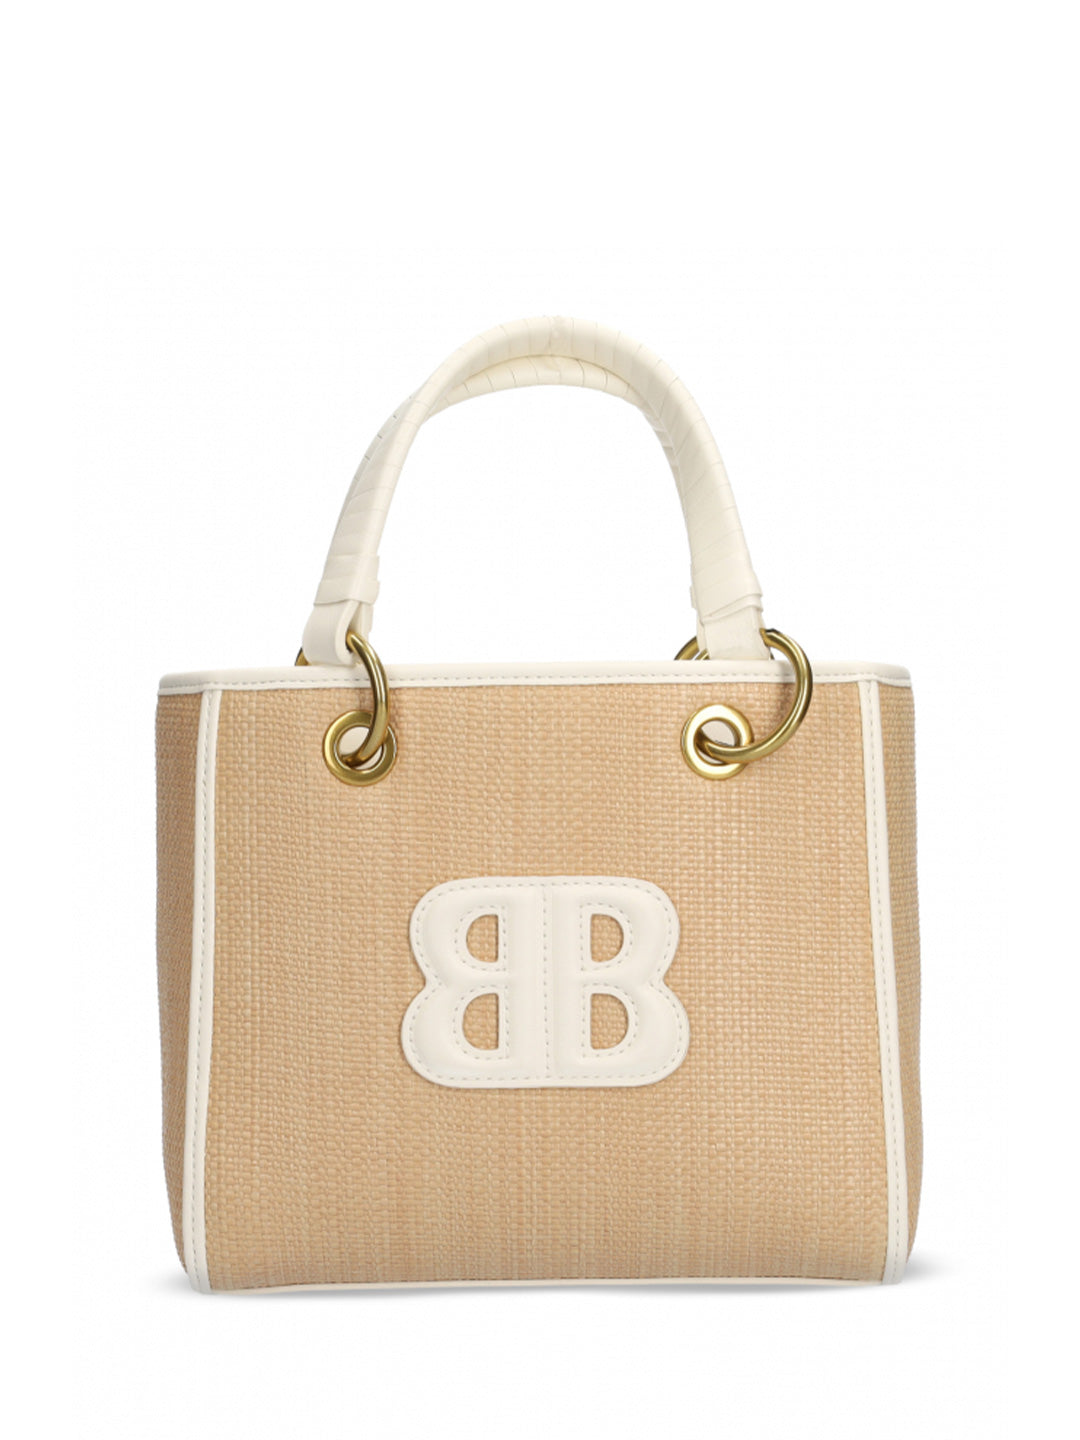 Bibi Lou Ozzy borsa bianco a spalla con logo in rilievo